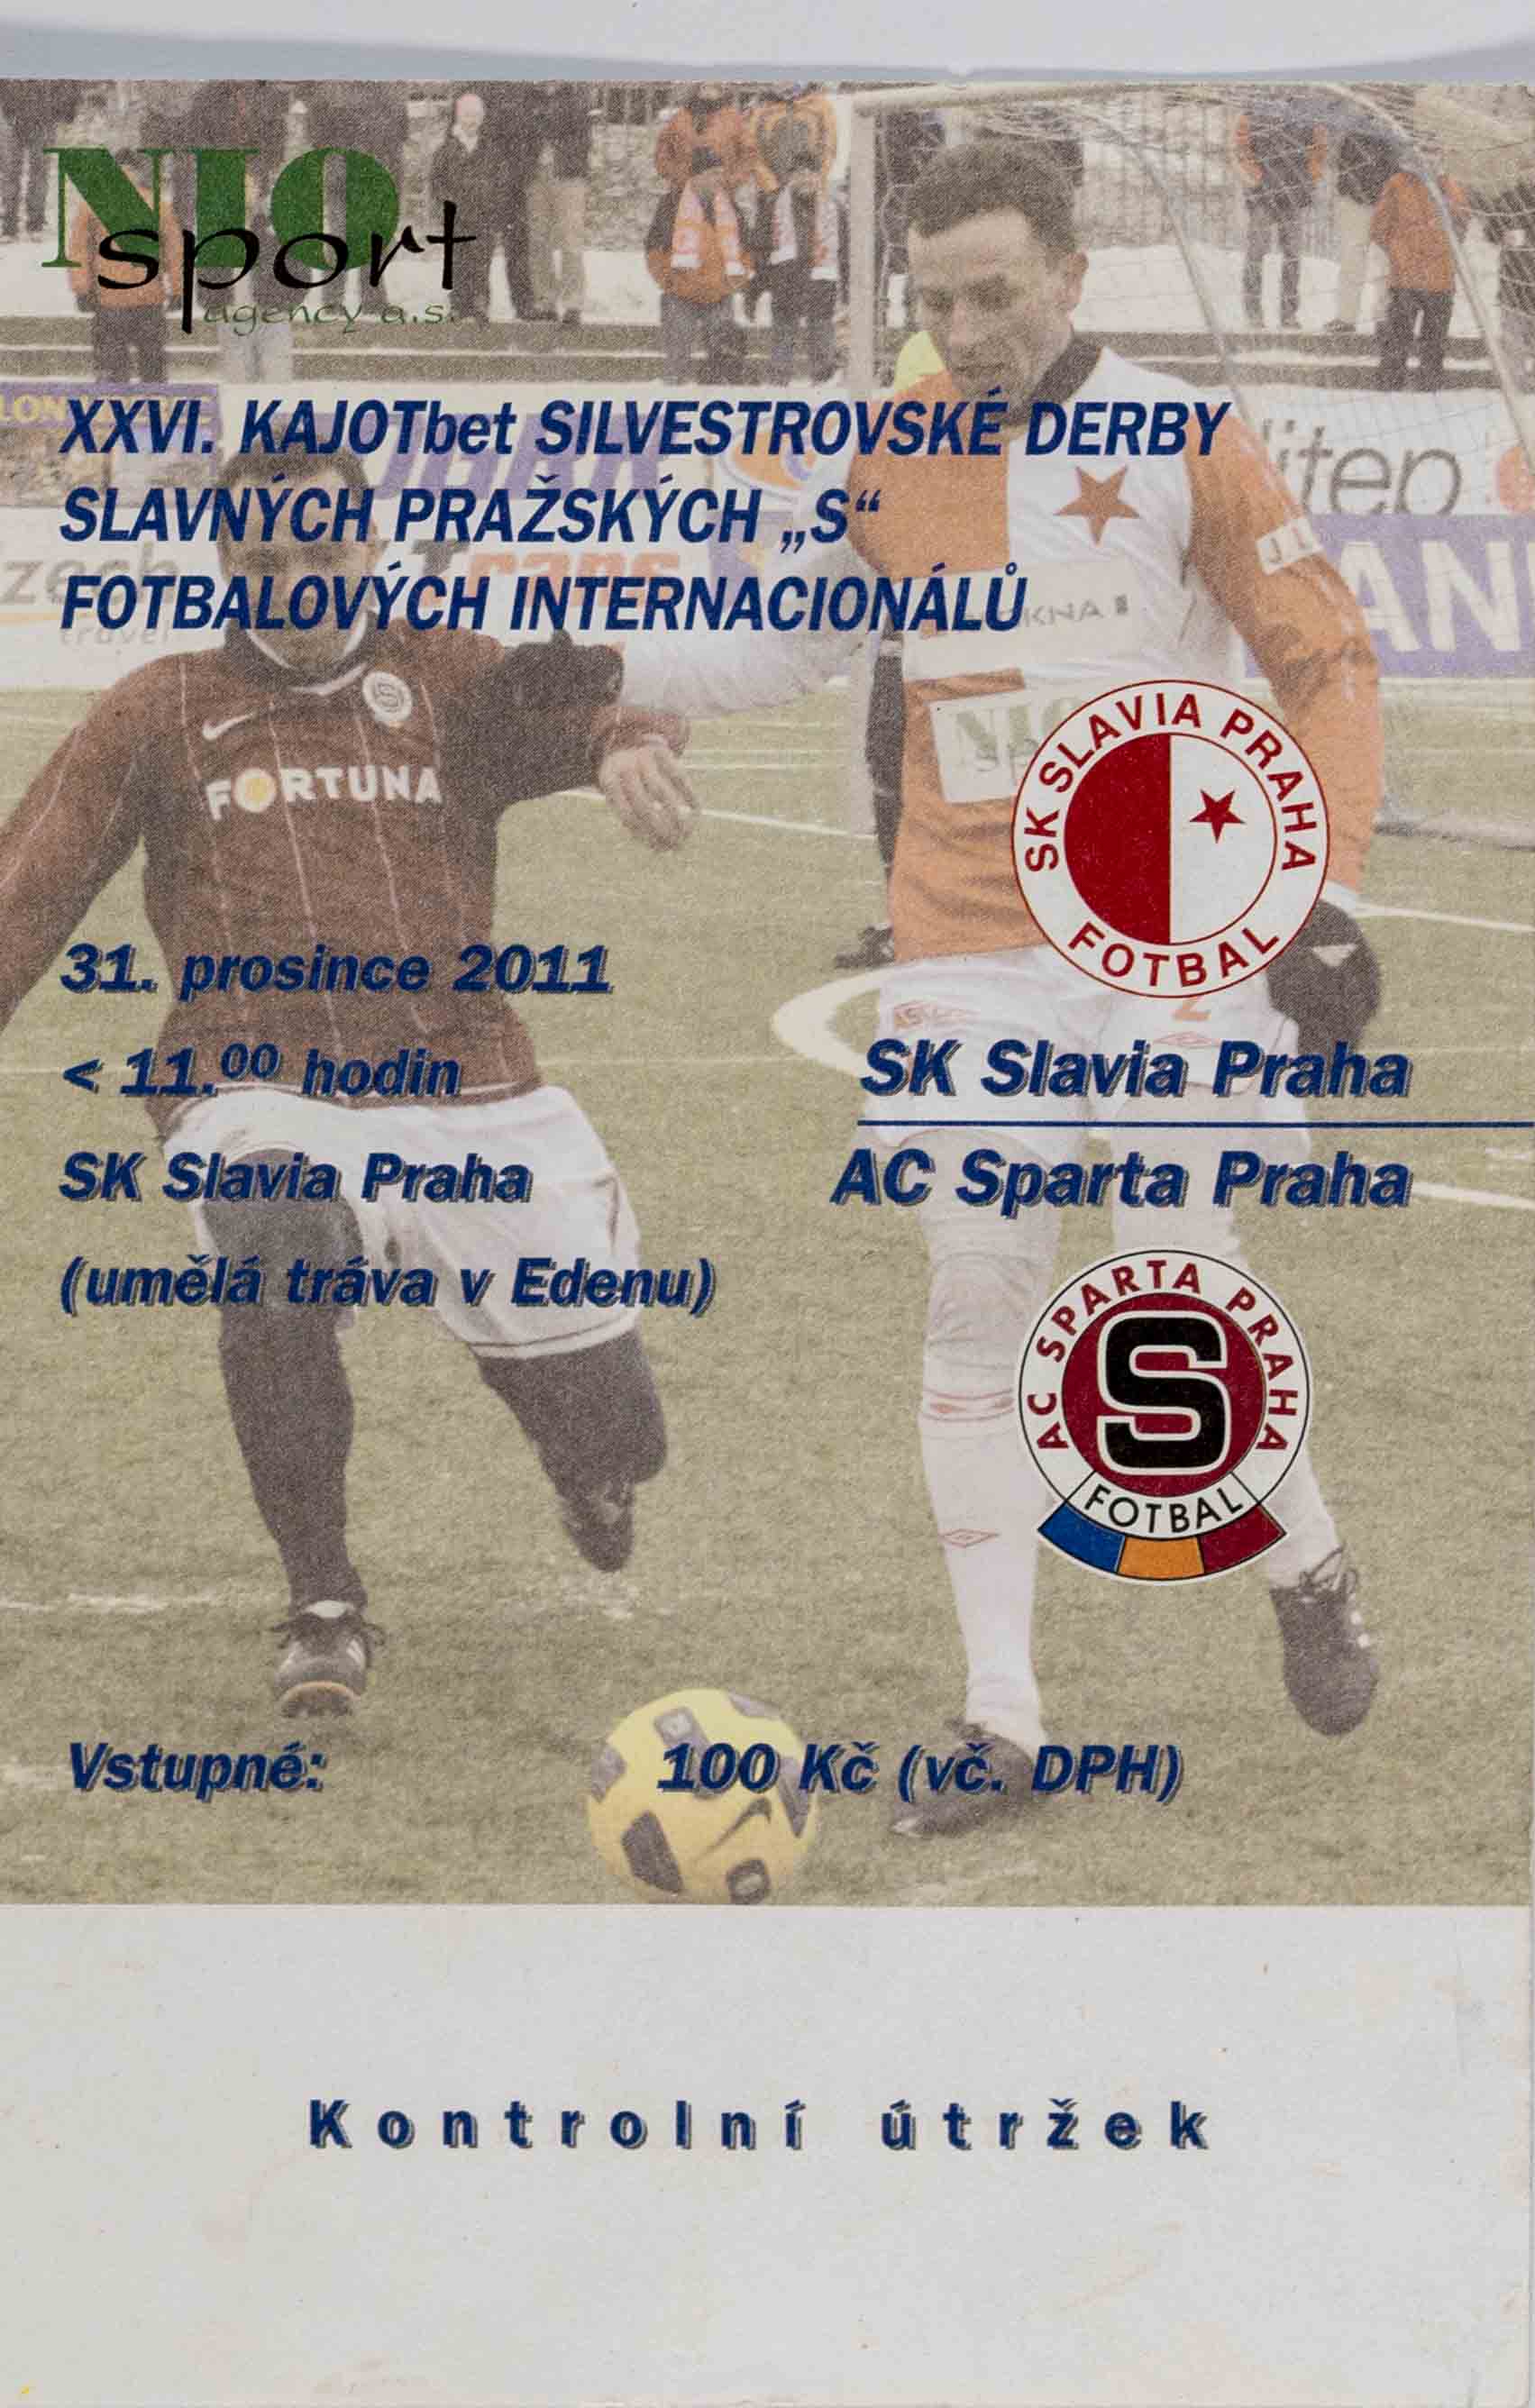 Vstupenka fotbal SK Slavia Praha vs. AC Sparta, XXVI. Derby fotbalových internacionálů, 2011